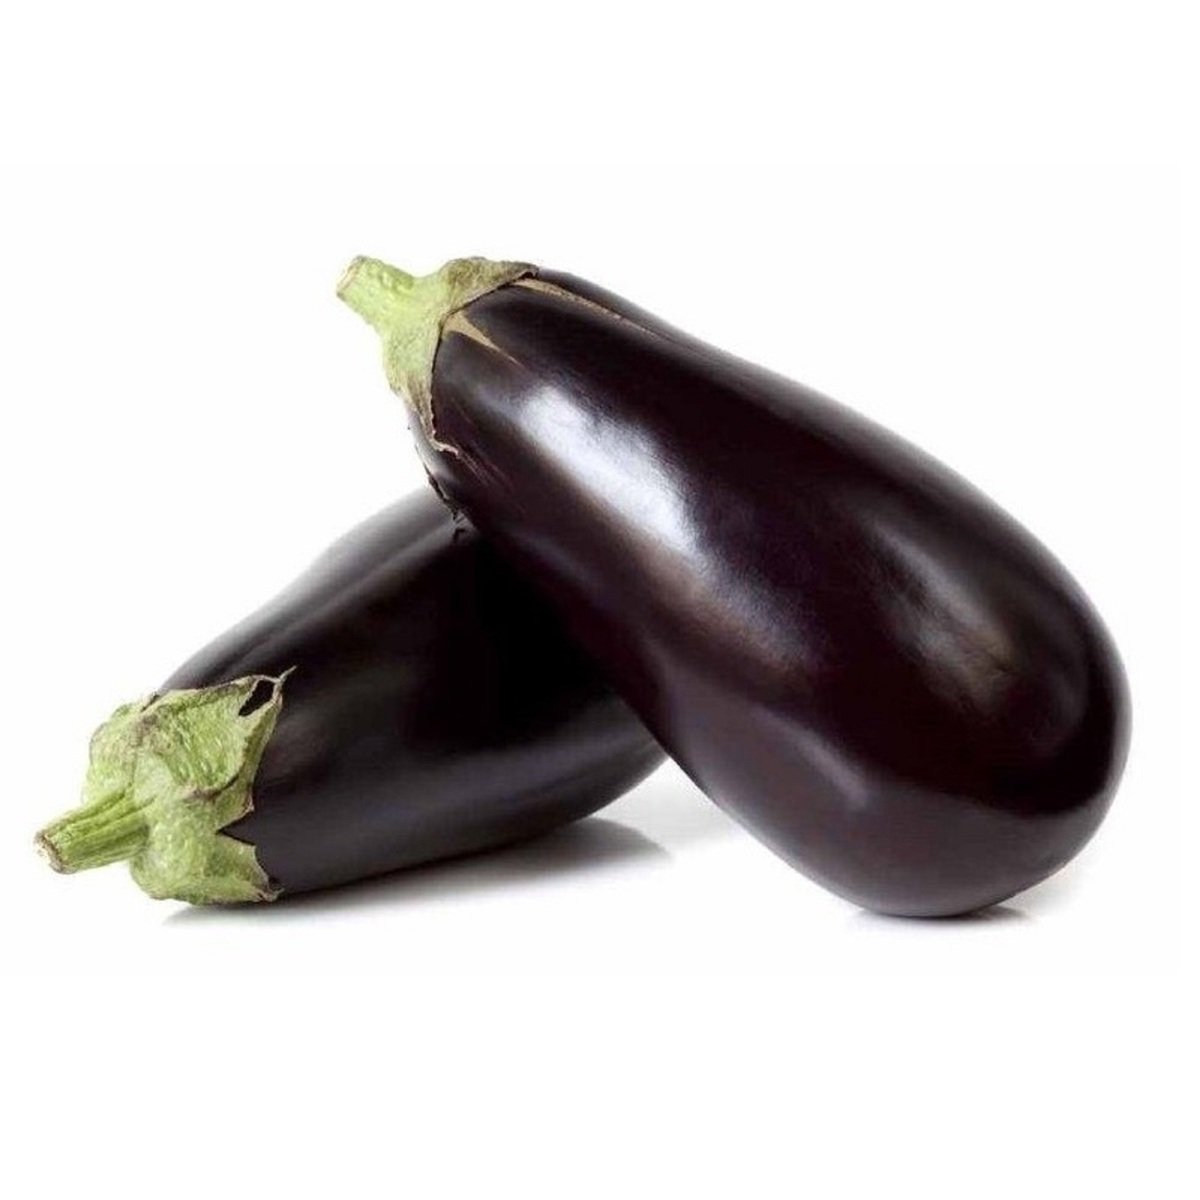 Buy Eggplant Big 1 kg Online at Best Price | Green Vegetables | Lulu UAE in UAE